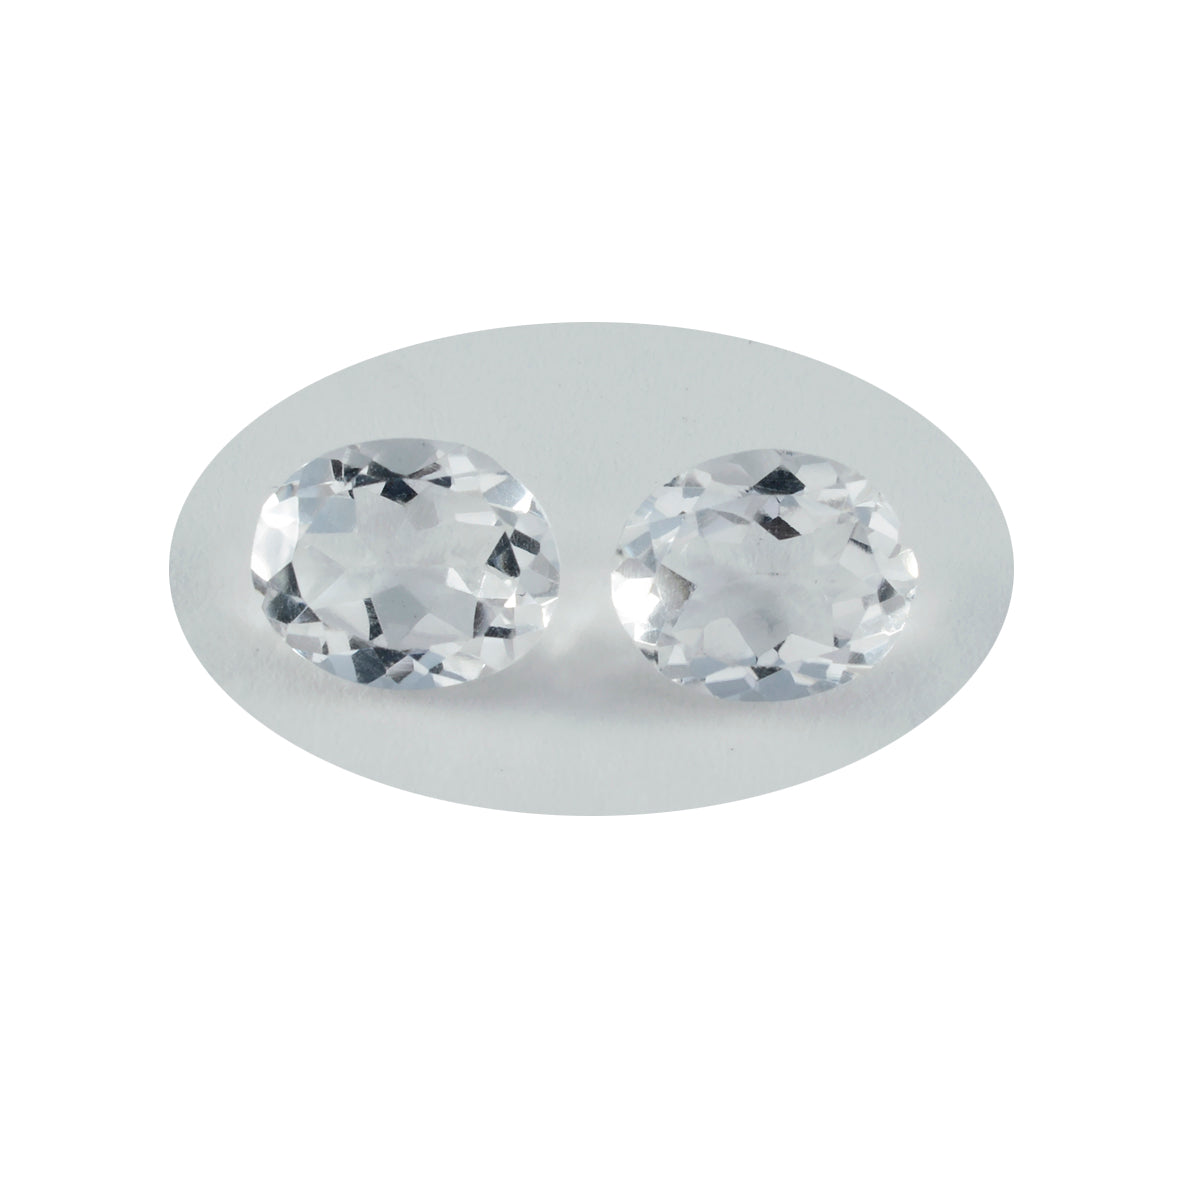 Riyogems 1pc quartz cristal blanc à facettes 9x11mm forme ovale excellente qualité gemme en vrac